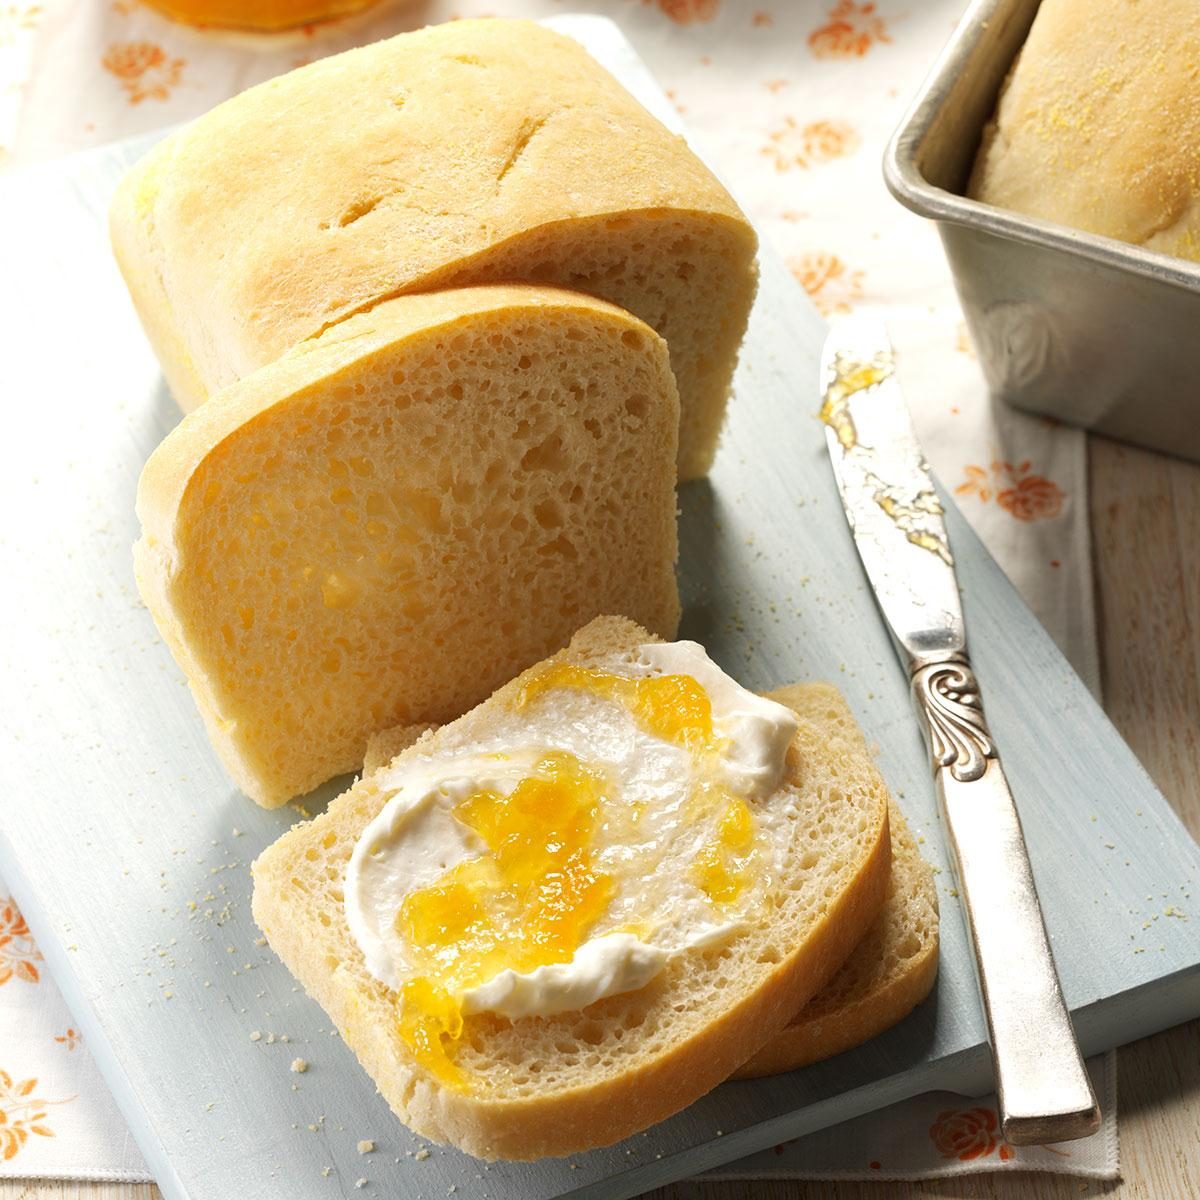 Homemade English Muffin Bread Recipe - No Knead Bread